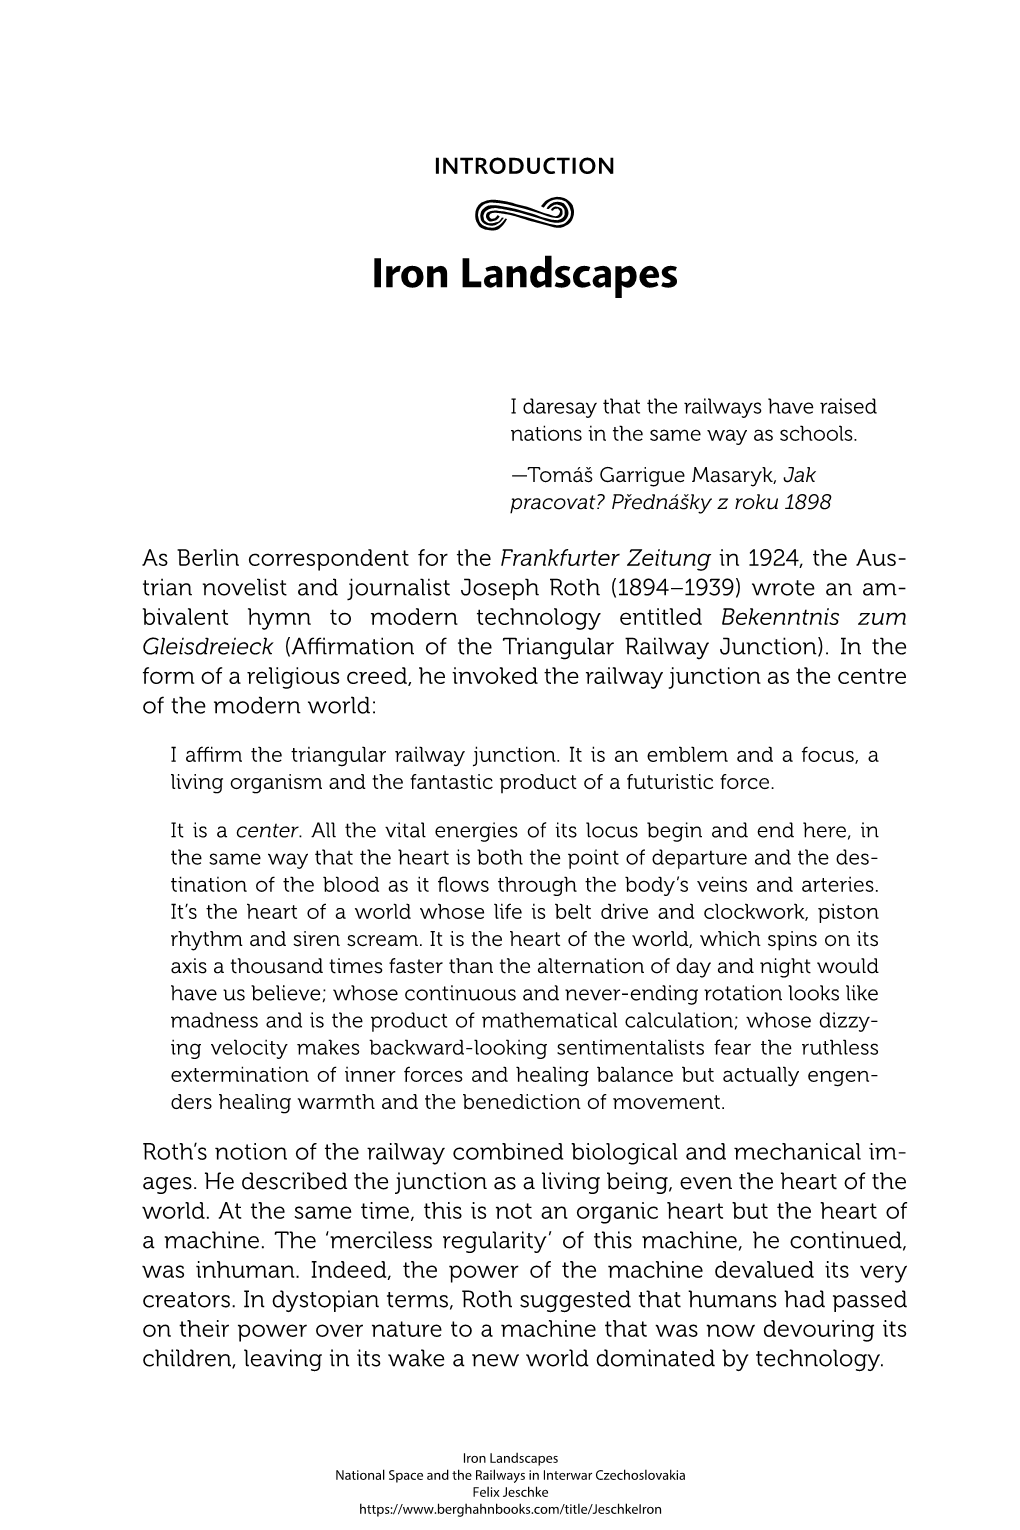 Iron Landscapes